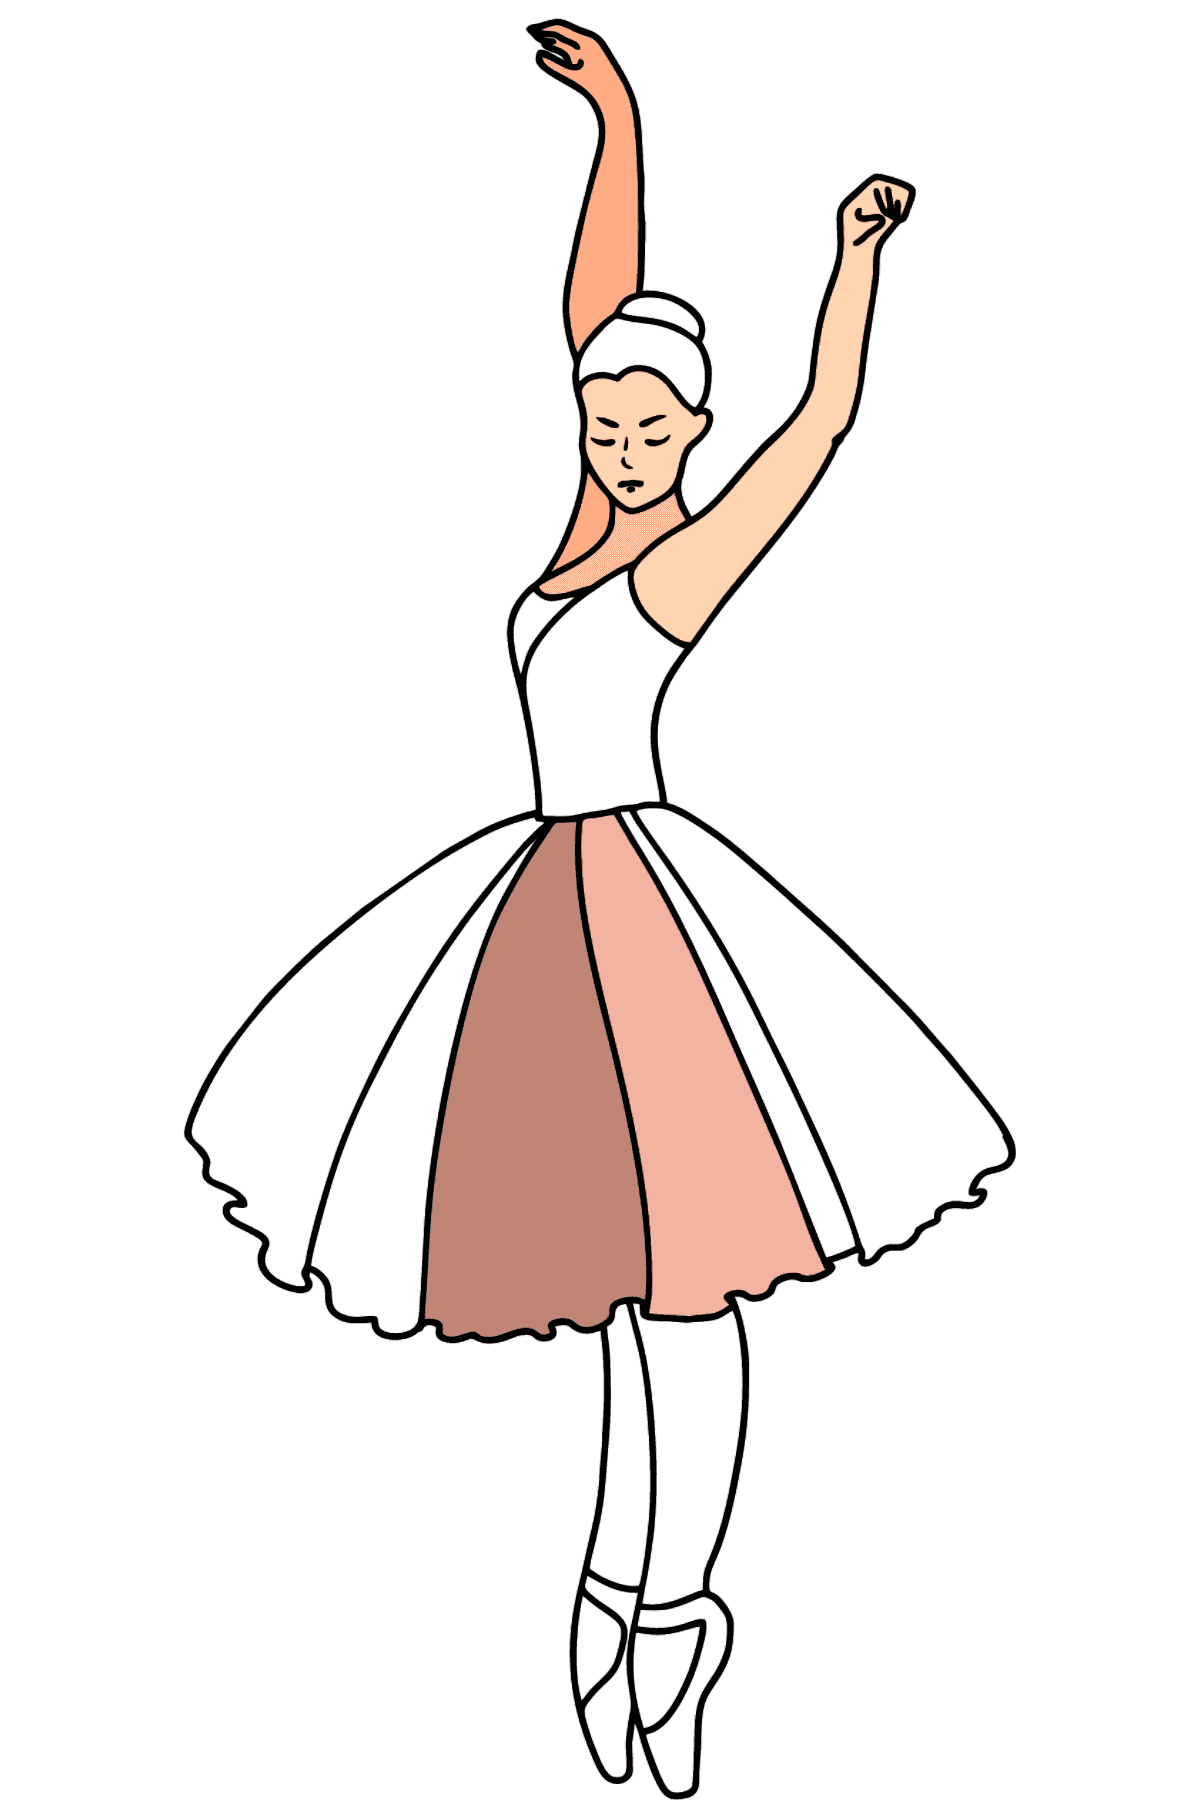 Tančící baletka omalovánka - Omalovánky pro děti